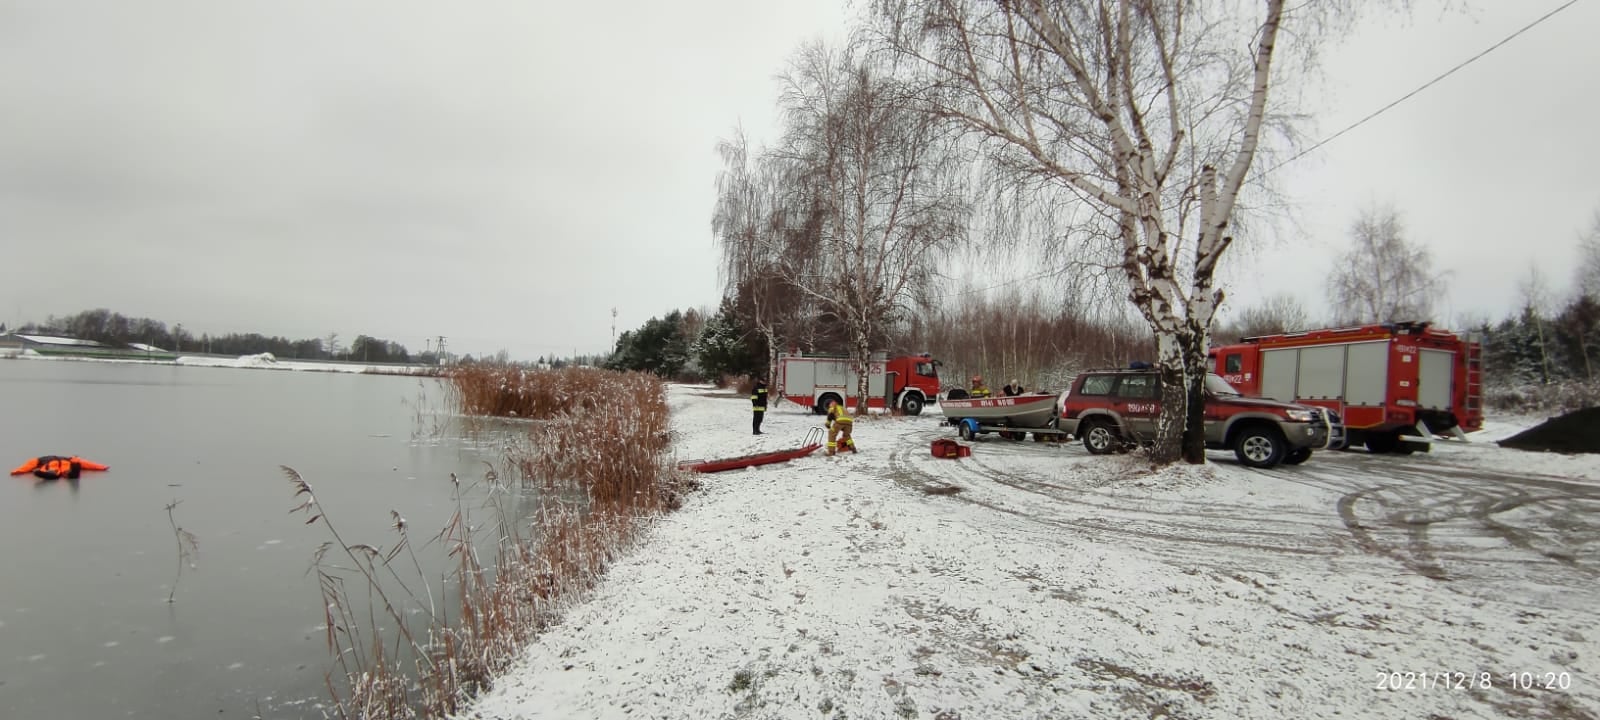 Strażacy szykują się na zimowe akcje ratunkowe. Mają nadzieję, że w tym sezonie pod nikim lód się nie załamie (zdjęcia)